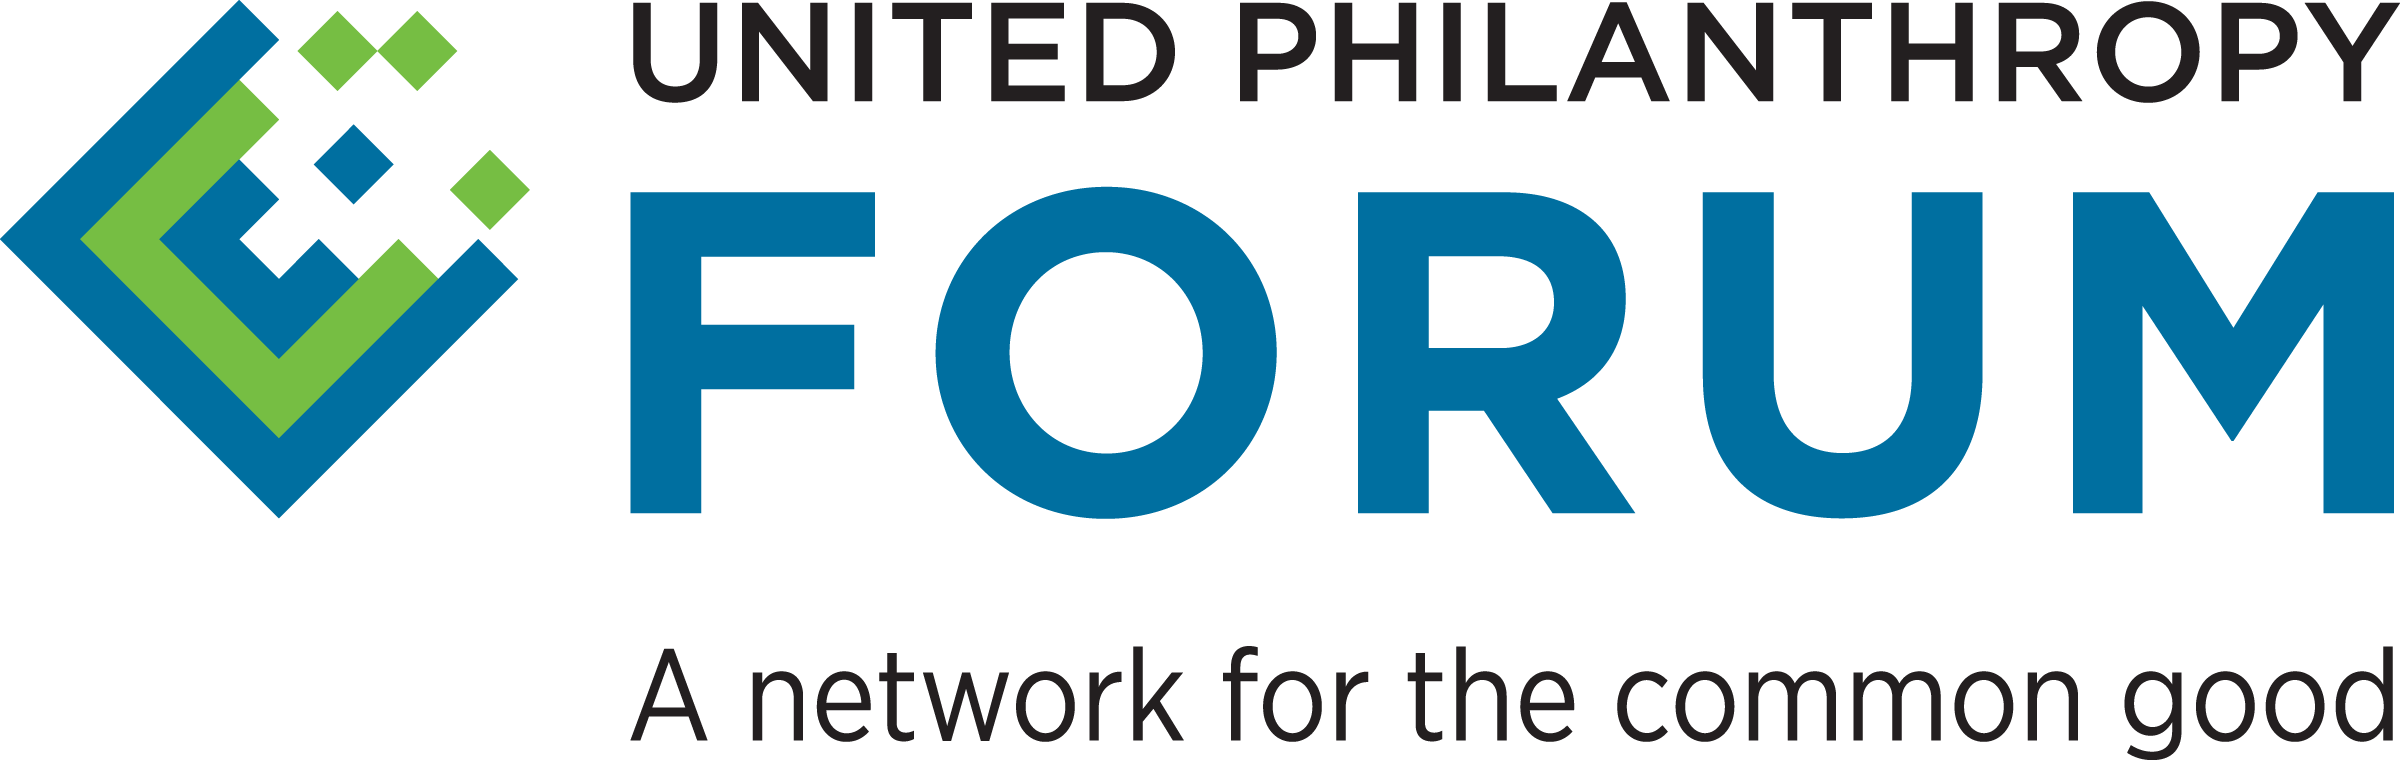 United Philanthropy Forum Logo